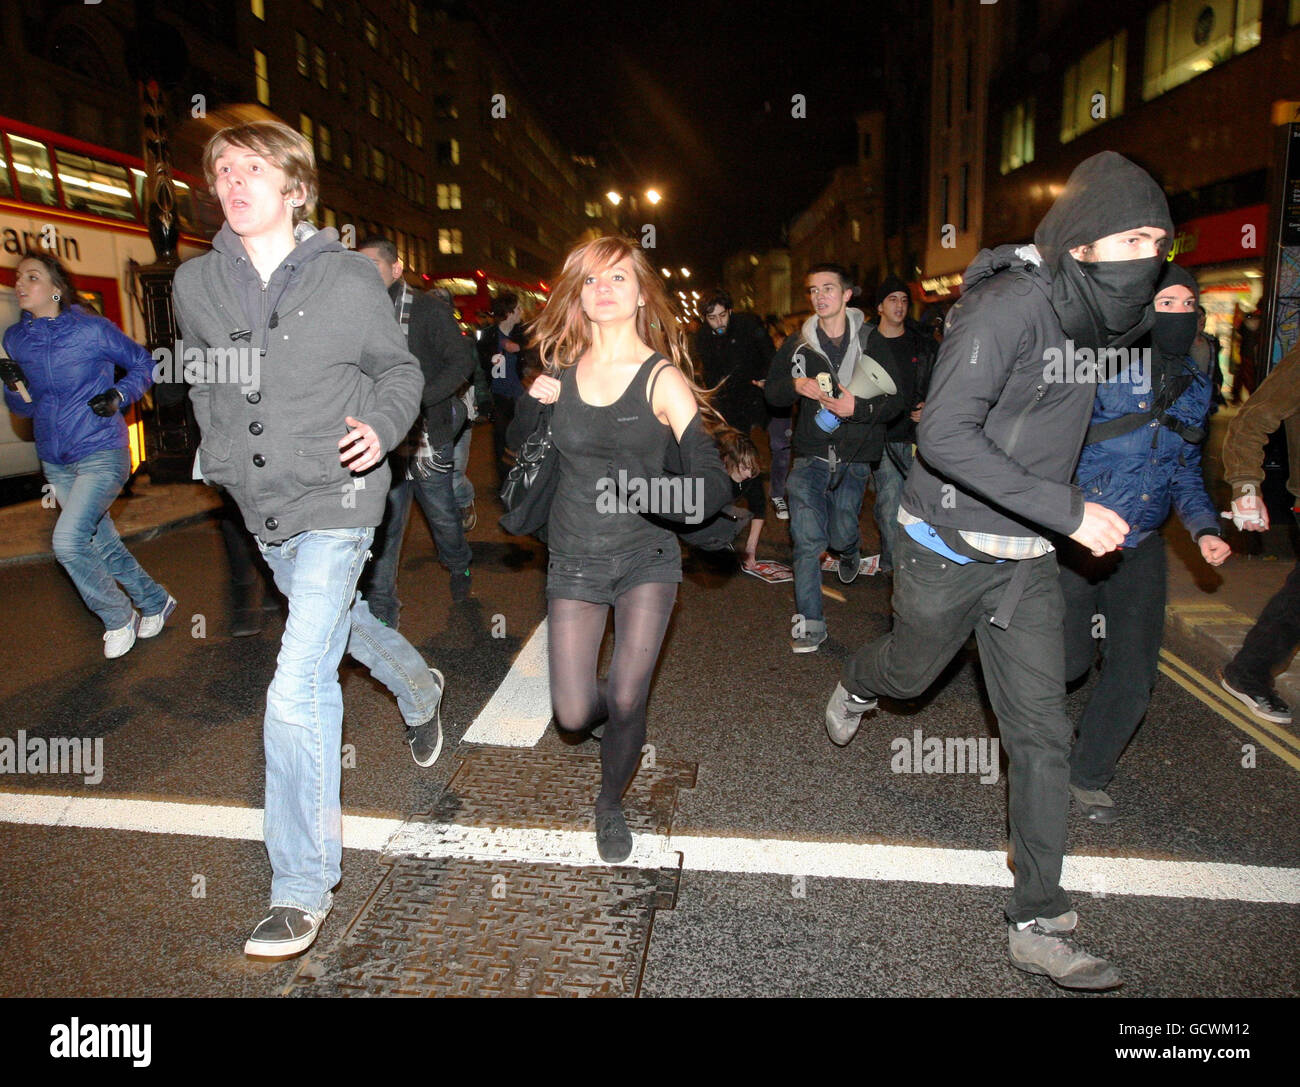 La gente corre a lo largo del Strand, en el centro de Londres, después de las protestas en Westminster contra un aumento en las tasas de matrícula universitaria. Foto de stock